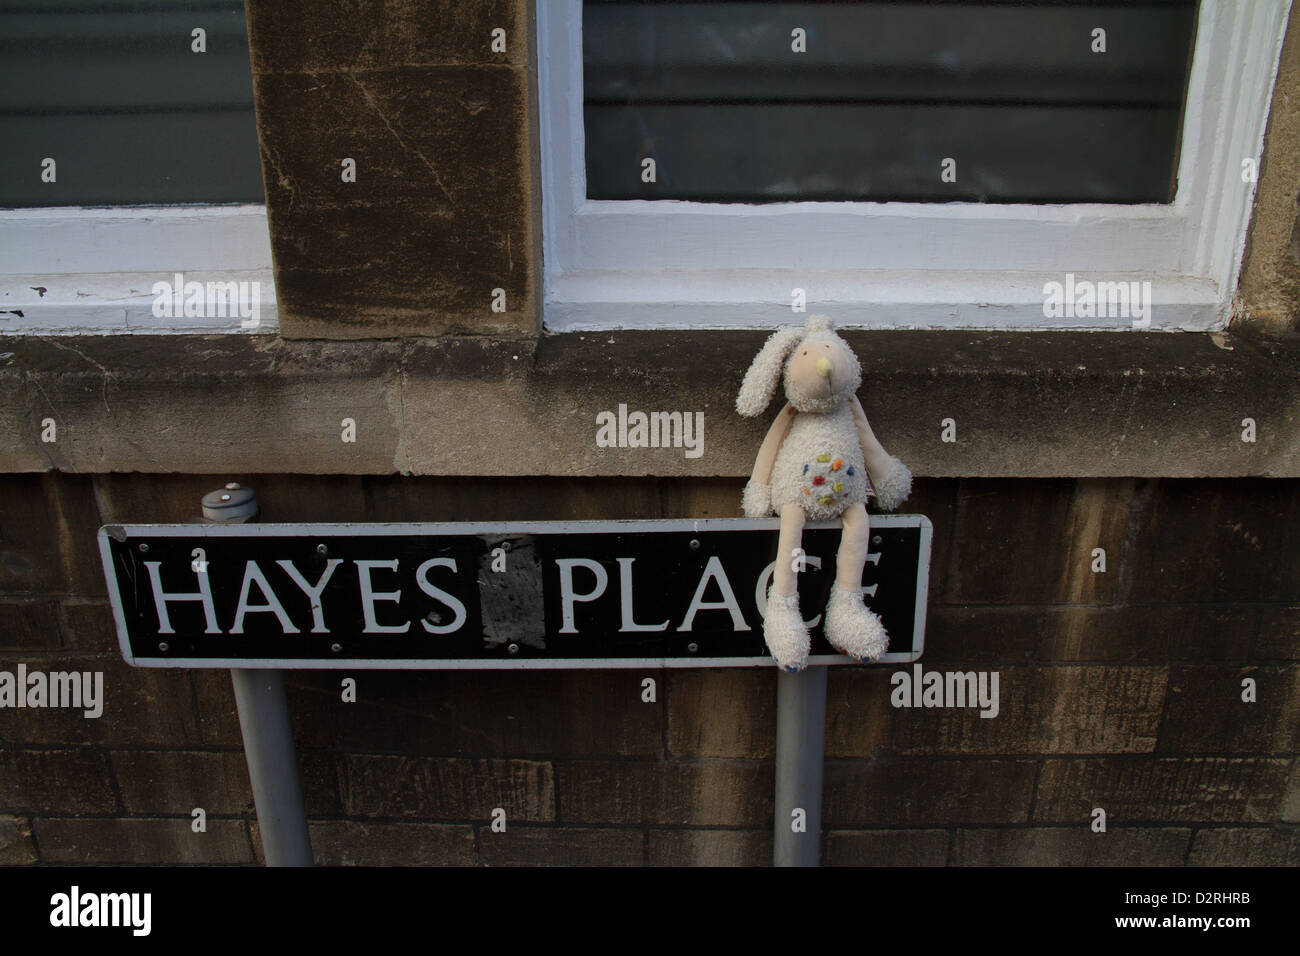 Un enfant abandonné ou perdu's rabbit toy est assis sur une plaque de rue au lieu Hayes, baignoire, Somerset Banque D'Images